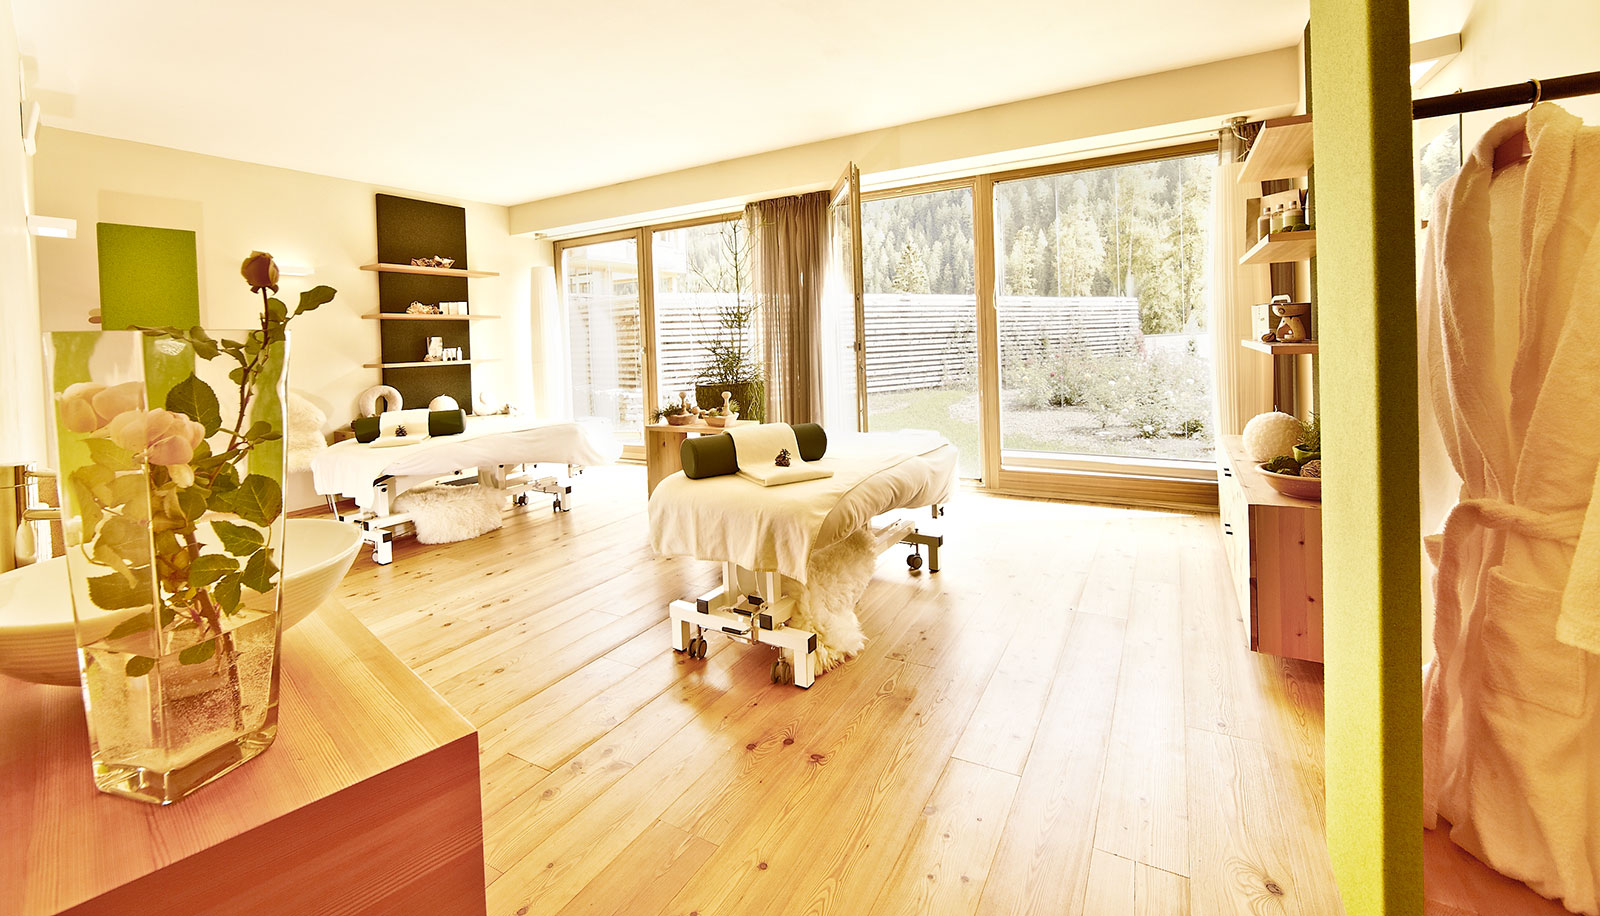 Stanza trattamenti dell'hotel Arosea in Val d'Ultimo con lettino per massaggi, pavimento in legno e vista sul giardino